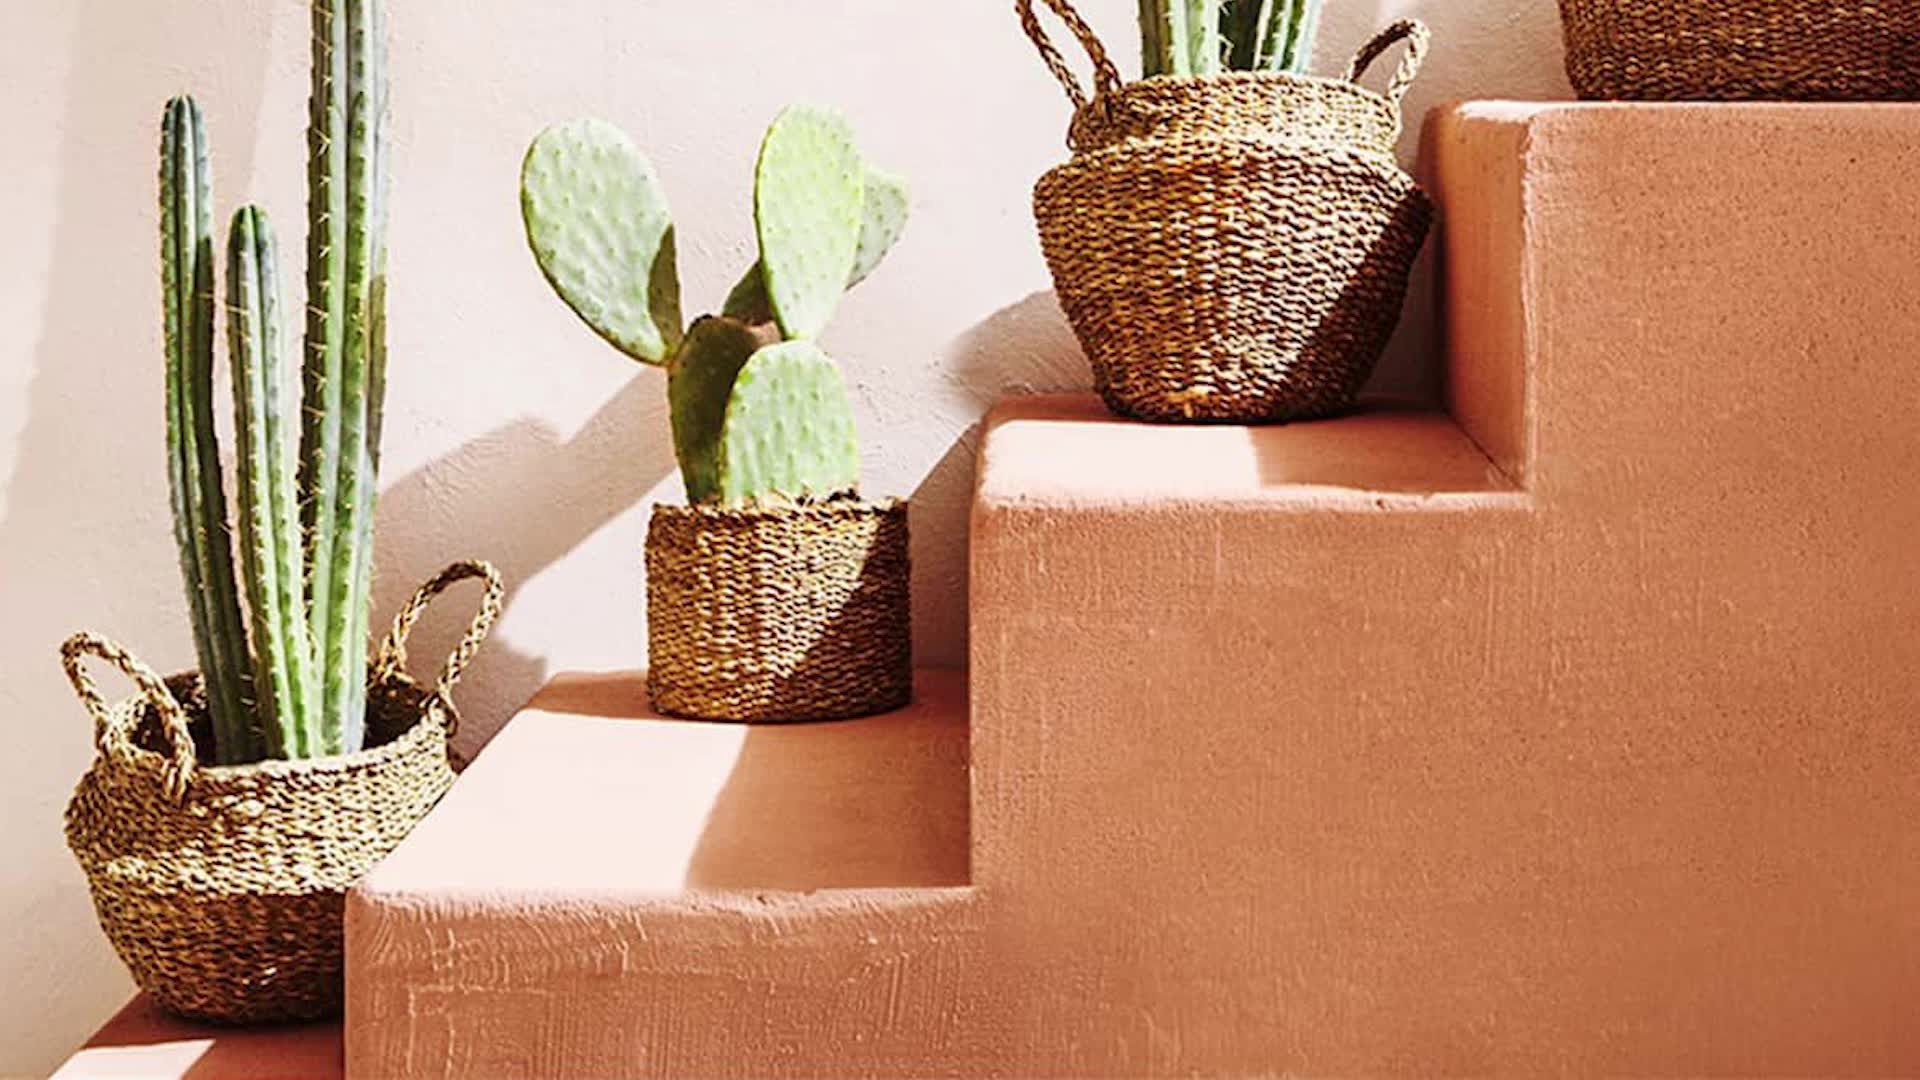 Todo sobre los cactus: cómo cuidarlos y decorar con ellos